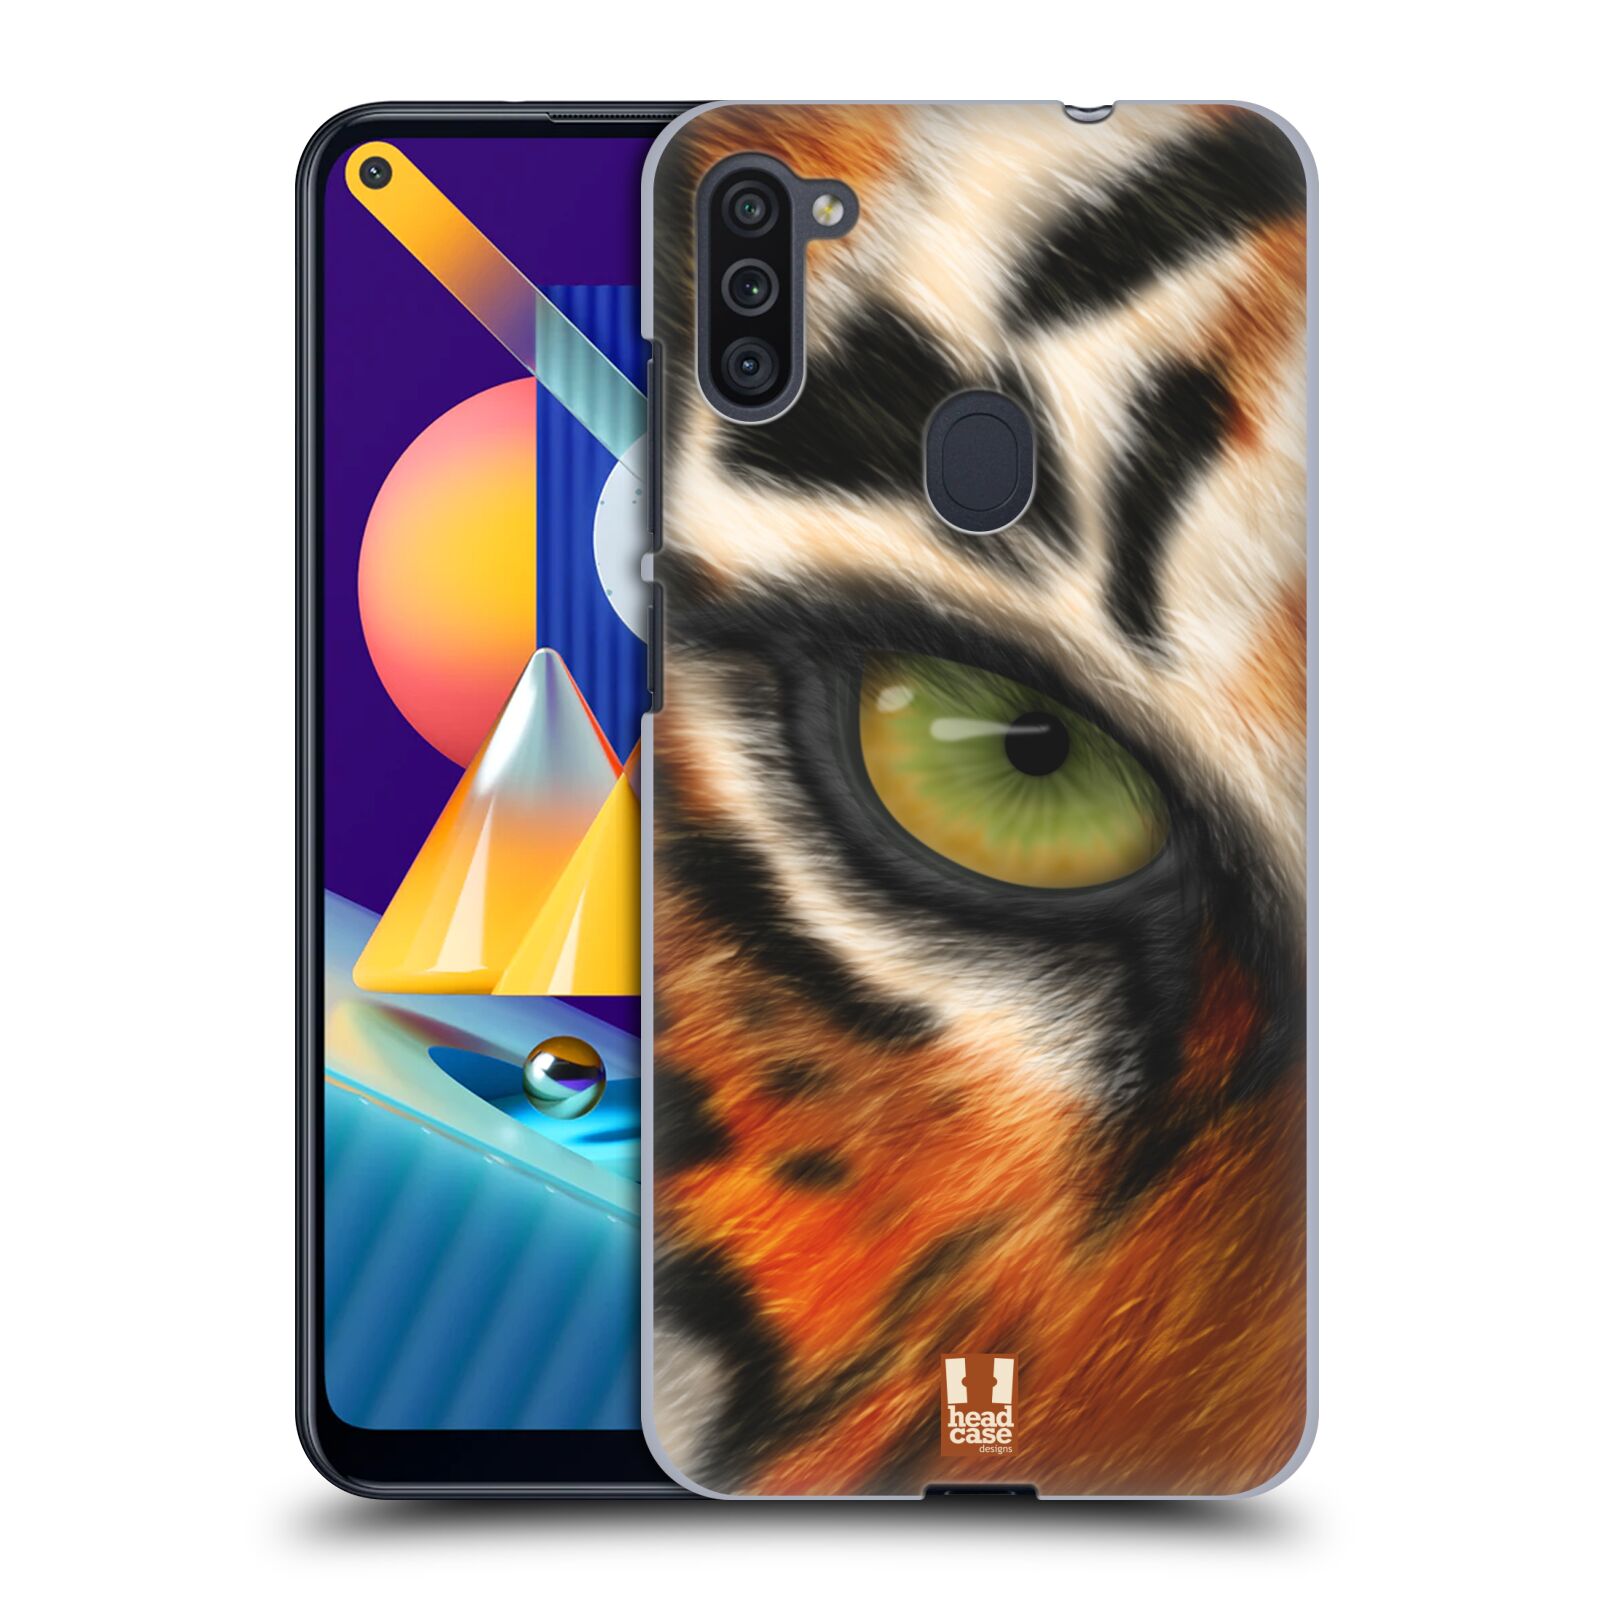 Plastový obal HEAD CASE na mobil Samsung Galaxy M11 vzor pohled zvířete oko tygr